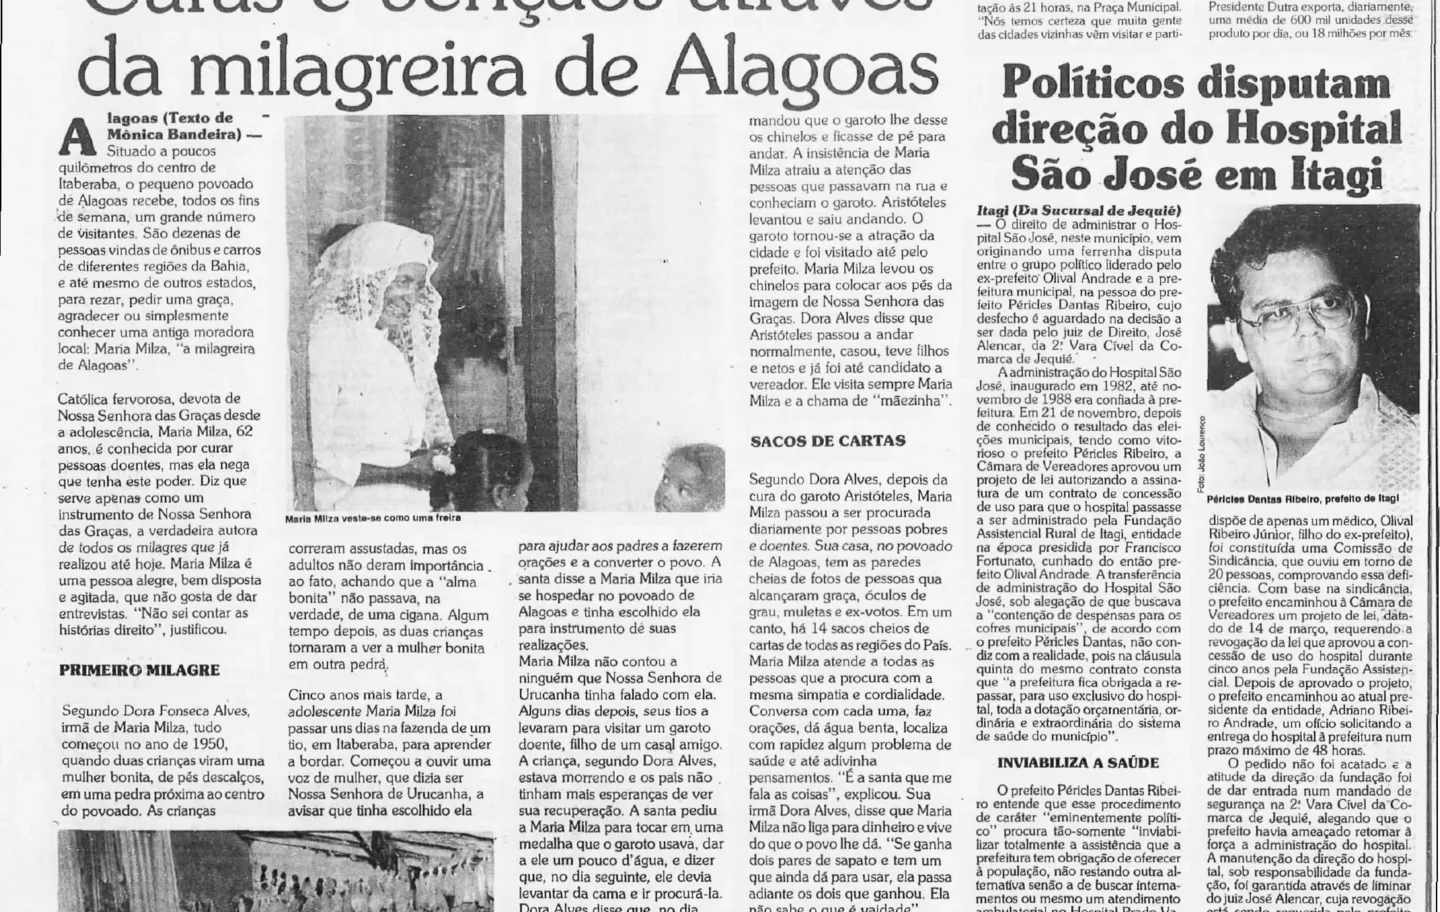 Reportagem sobre a atuação de Maria Milza em Alagoas